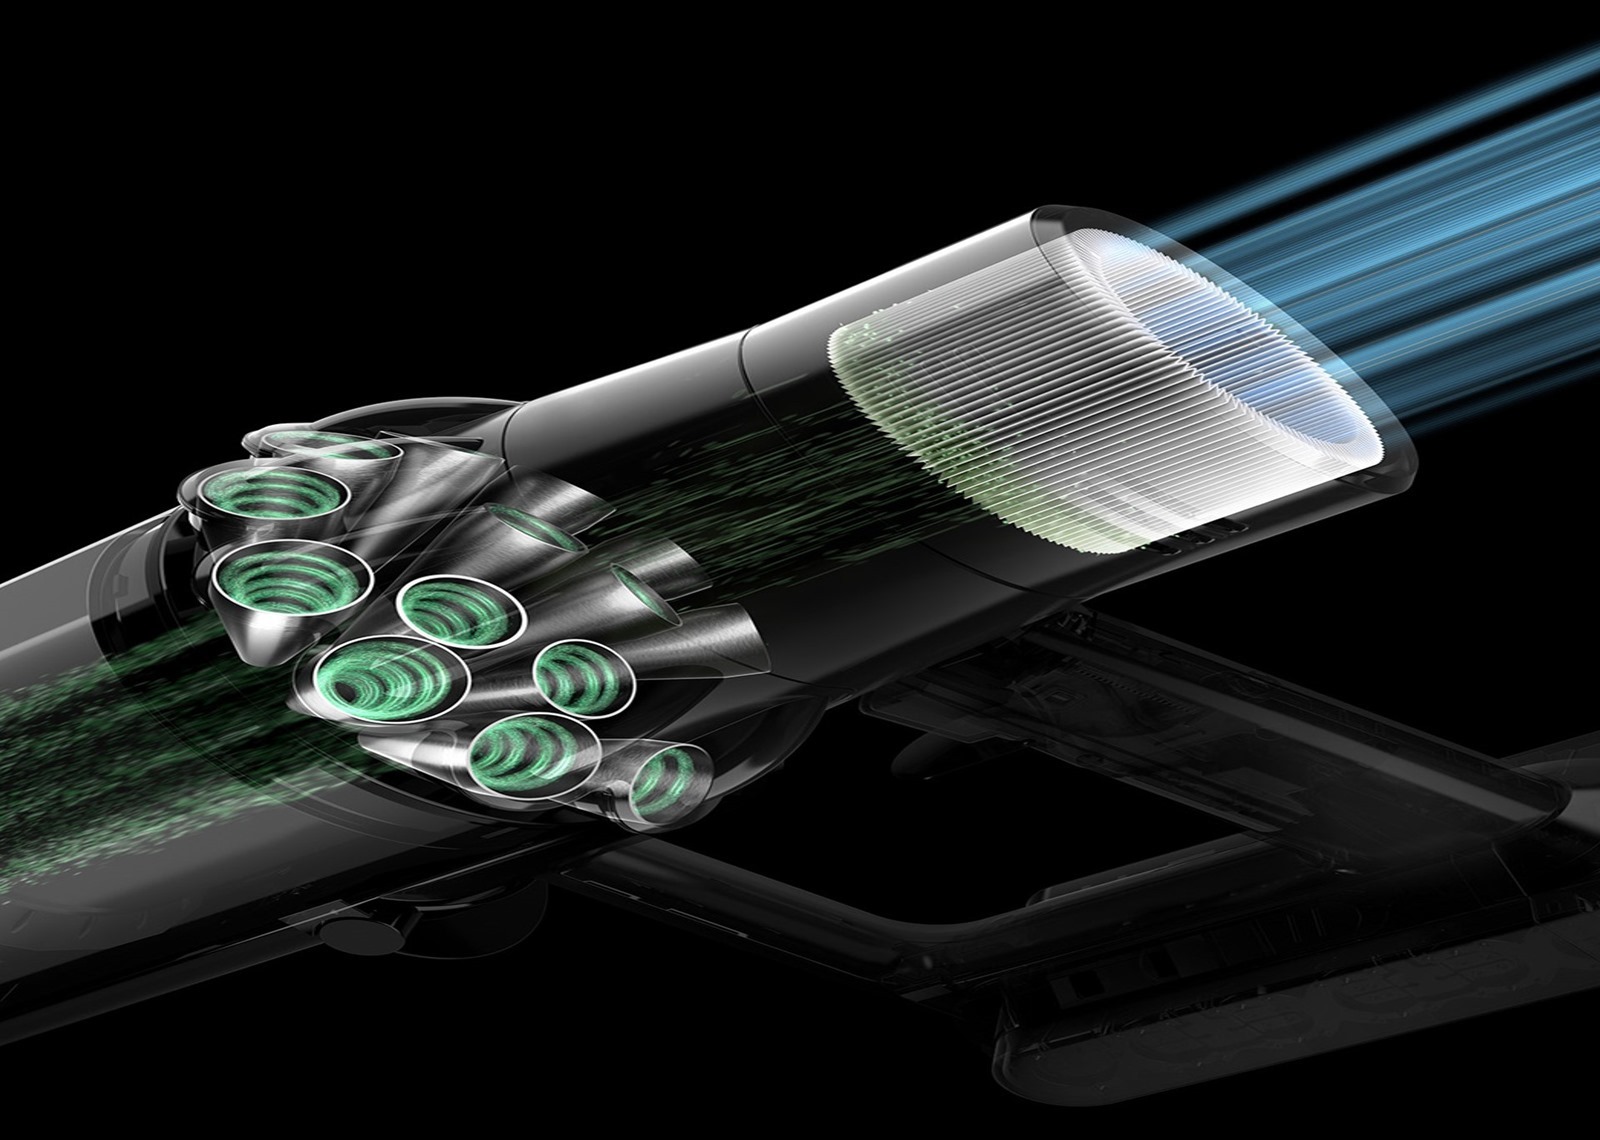 新一代 Dyson V11 吸塵器在台發表！全新可替換電池設計 節能模式下可達 120 分鐘強勁續航力 @3C 達人廖阿輝